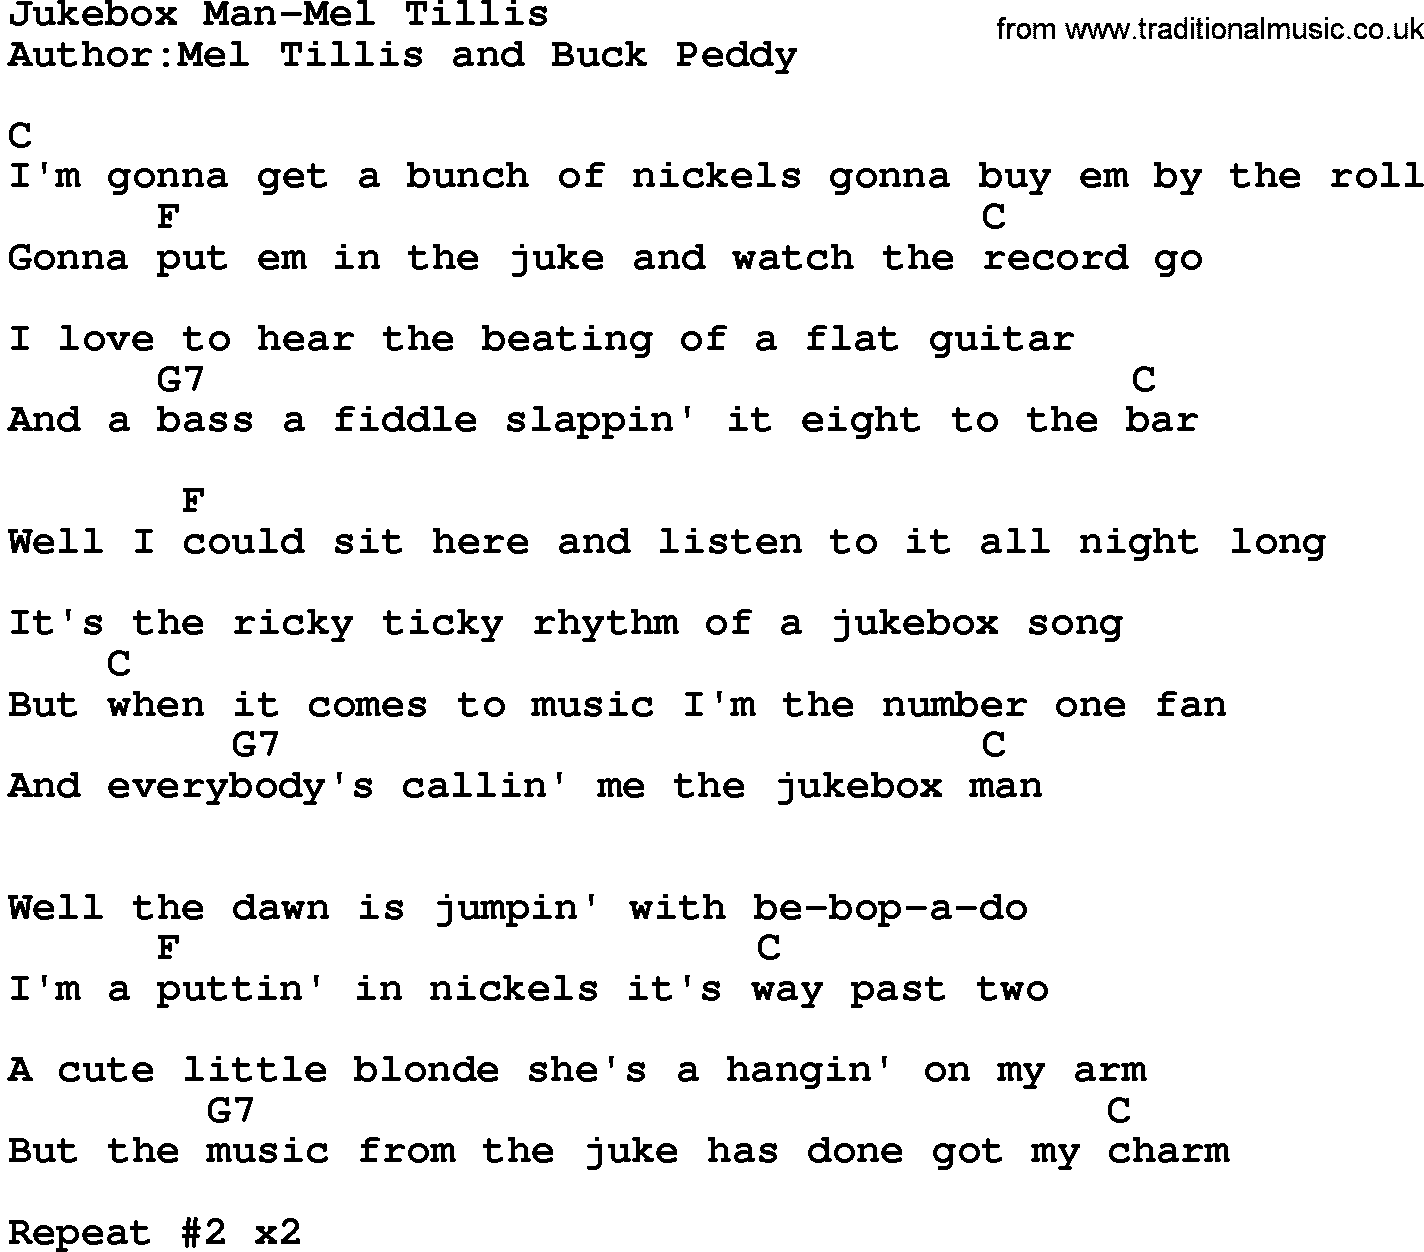 Country music song: Jukebox Man-Mel Tillis lyrics and chords